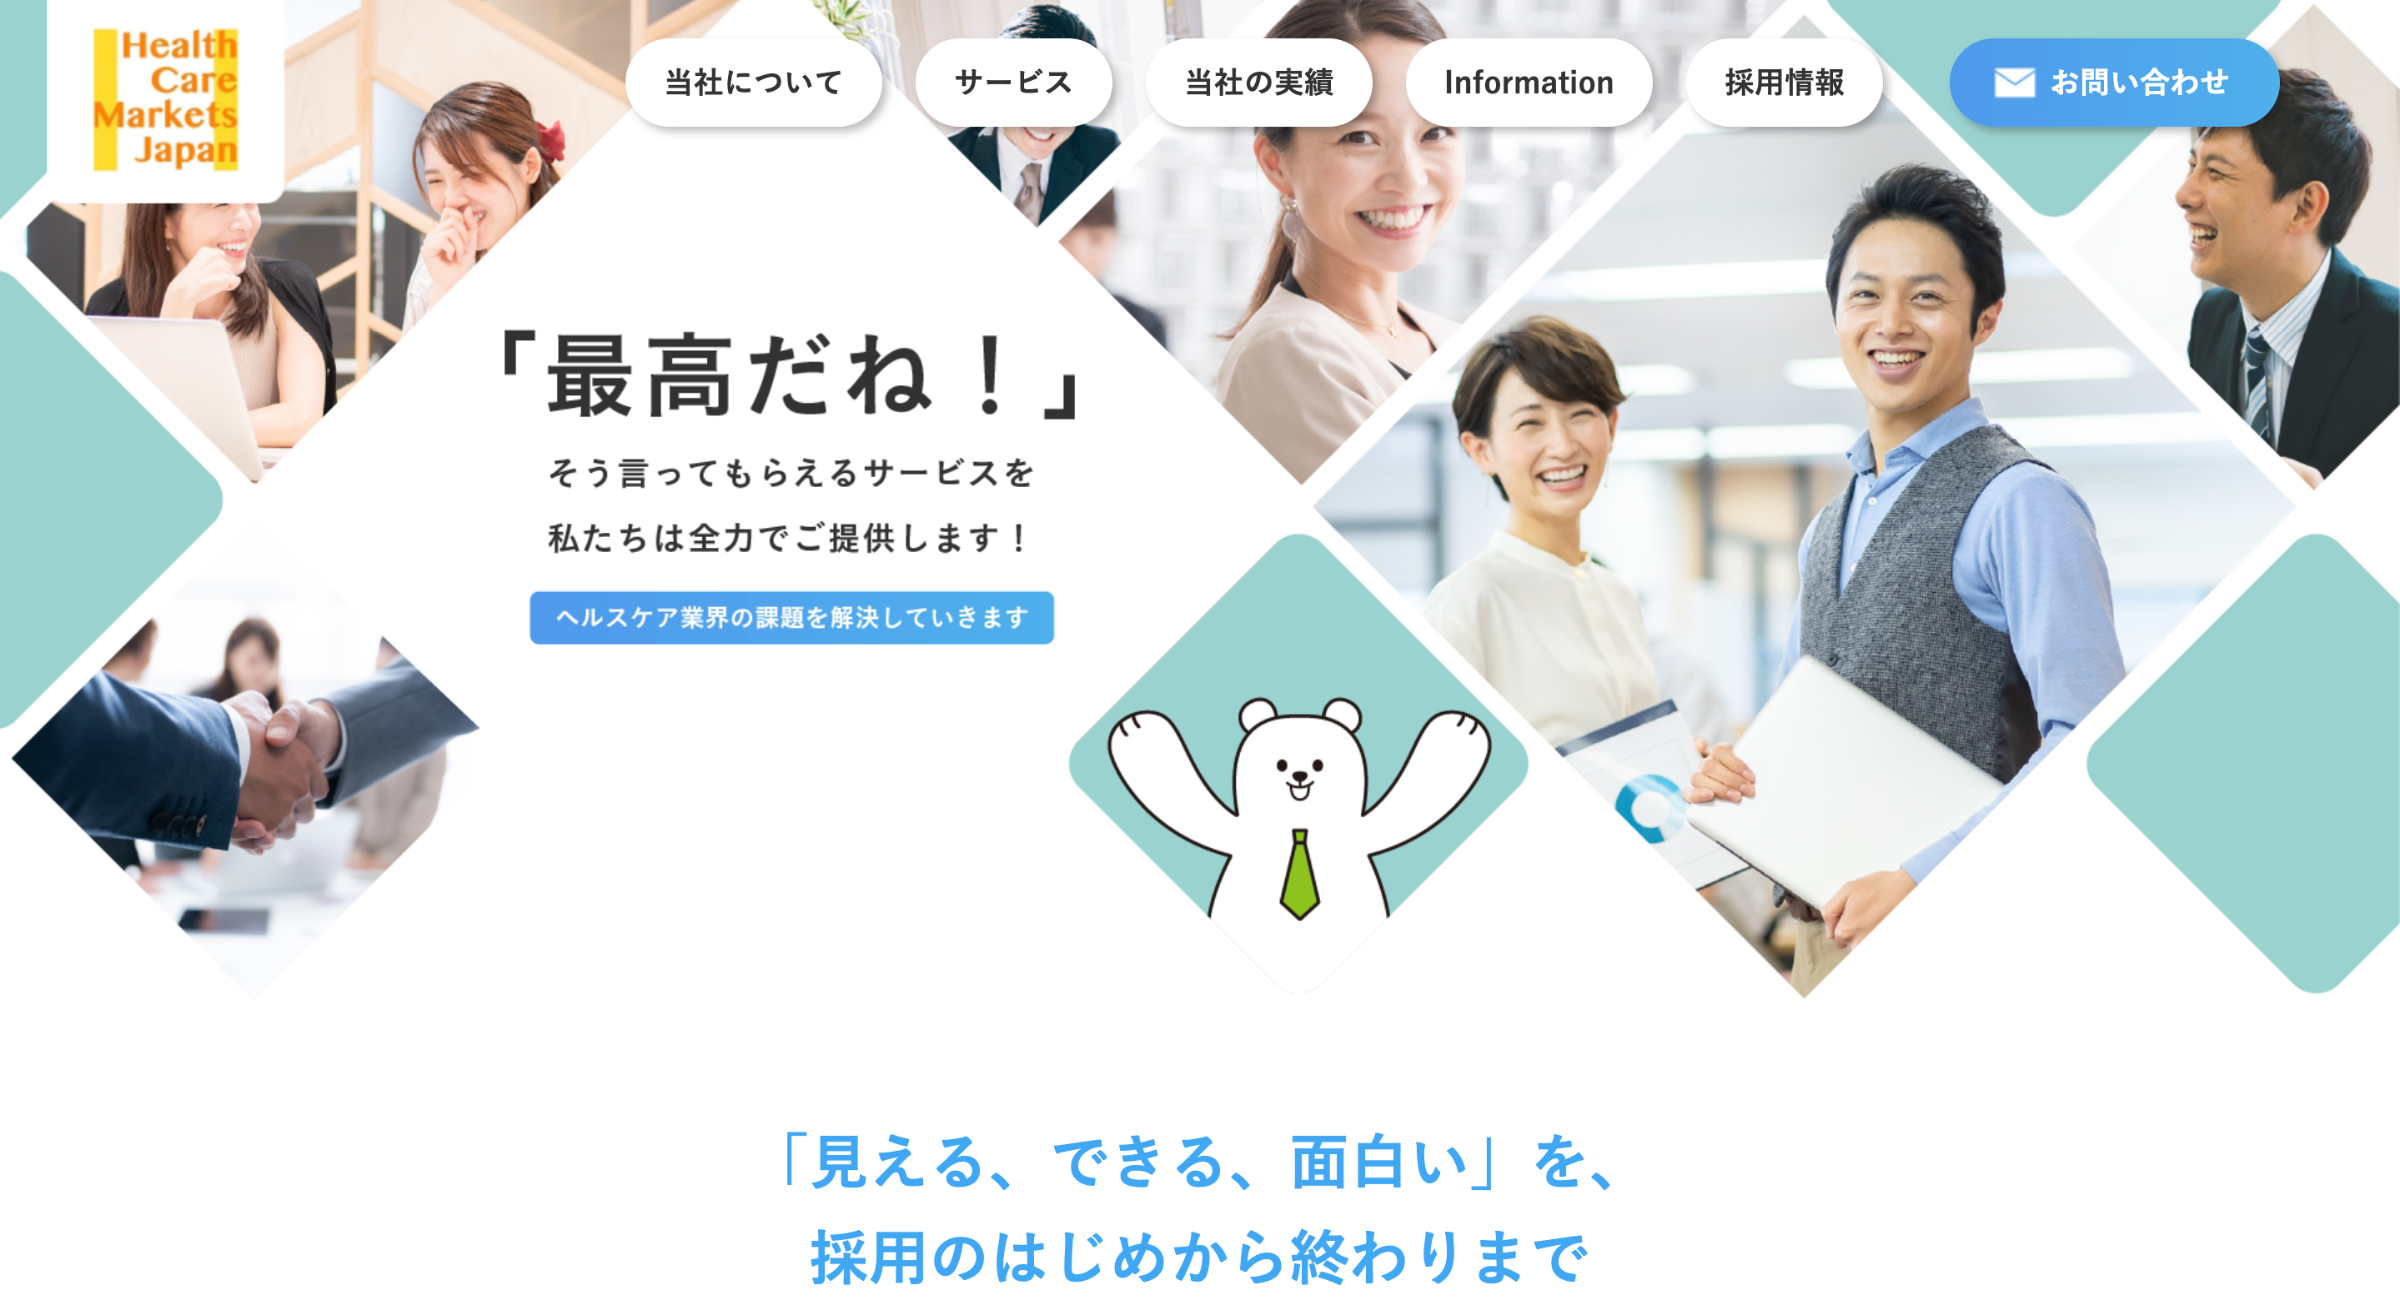 ヘルスケアマーケット・ジャパン株式会社のサービス画像